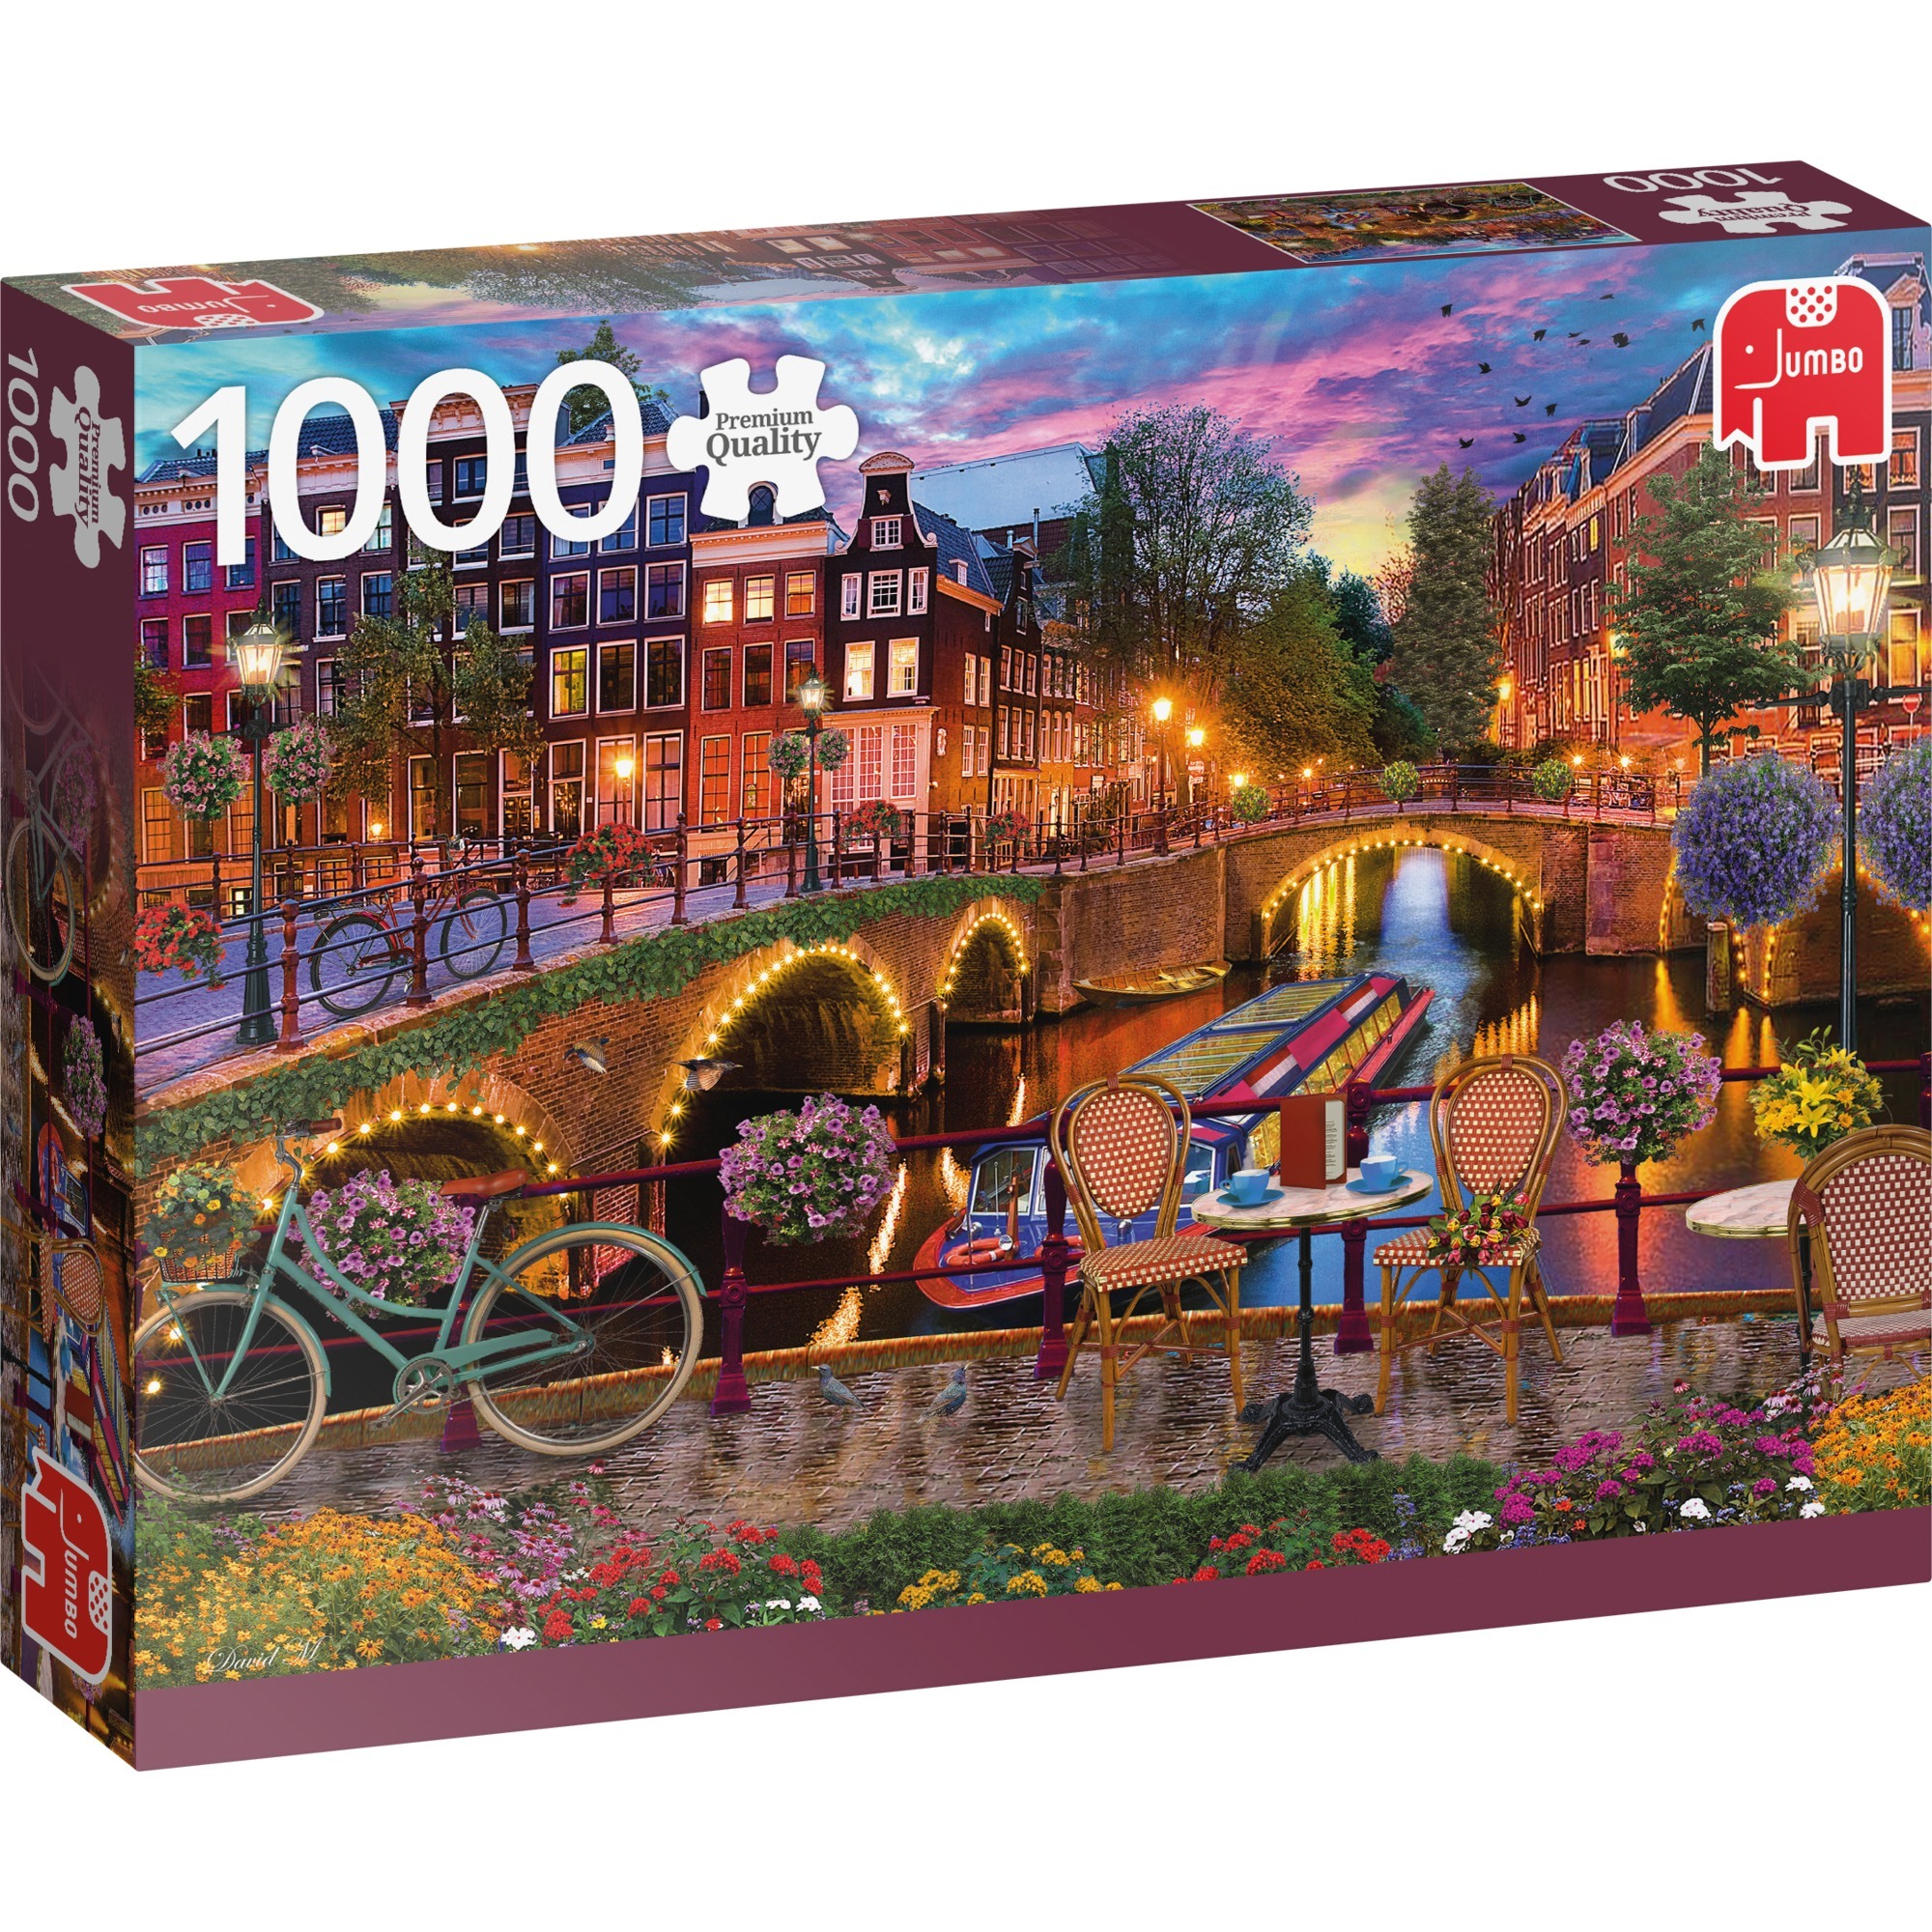 Image of Alternate - Puzzle Die Grachten von Amsterdam online einkaufen bei Alternate